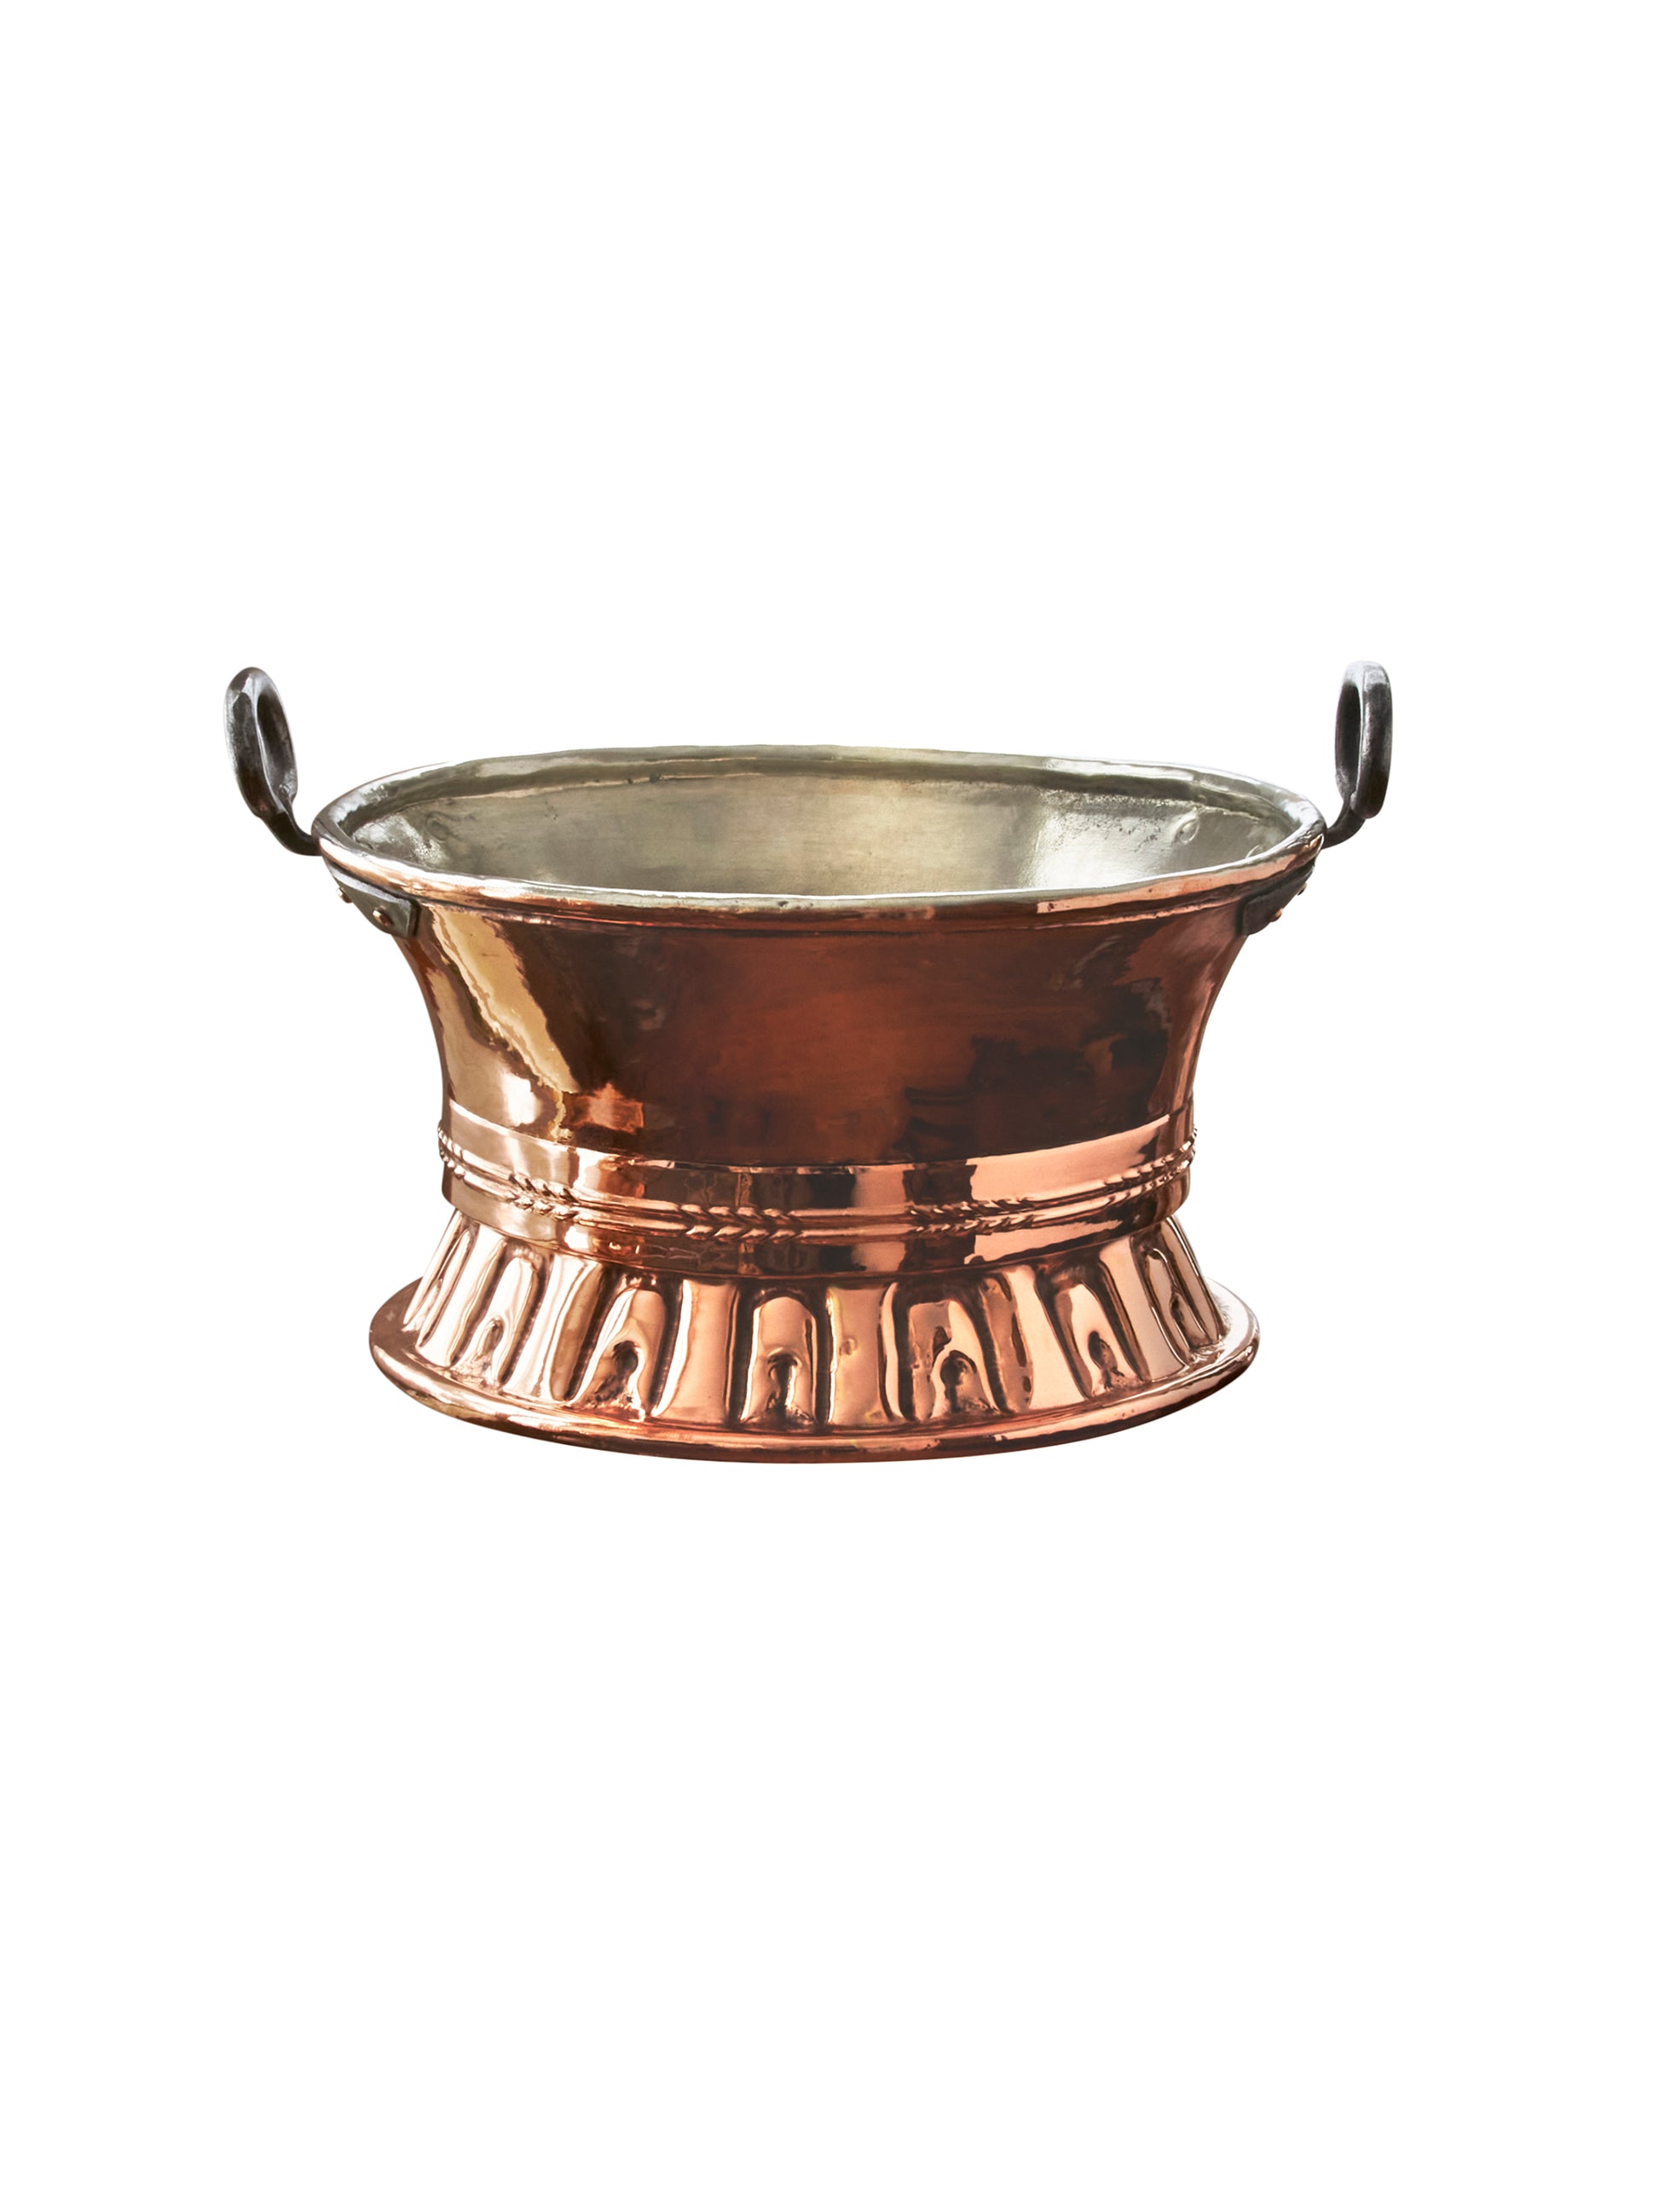 https://westontable.com/cdn/shop/files/Vintage-1870s-French-Large-Copper-Handled-Colander-Weston-Table-SP-1.jpg?v=1697235500&width=1946